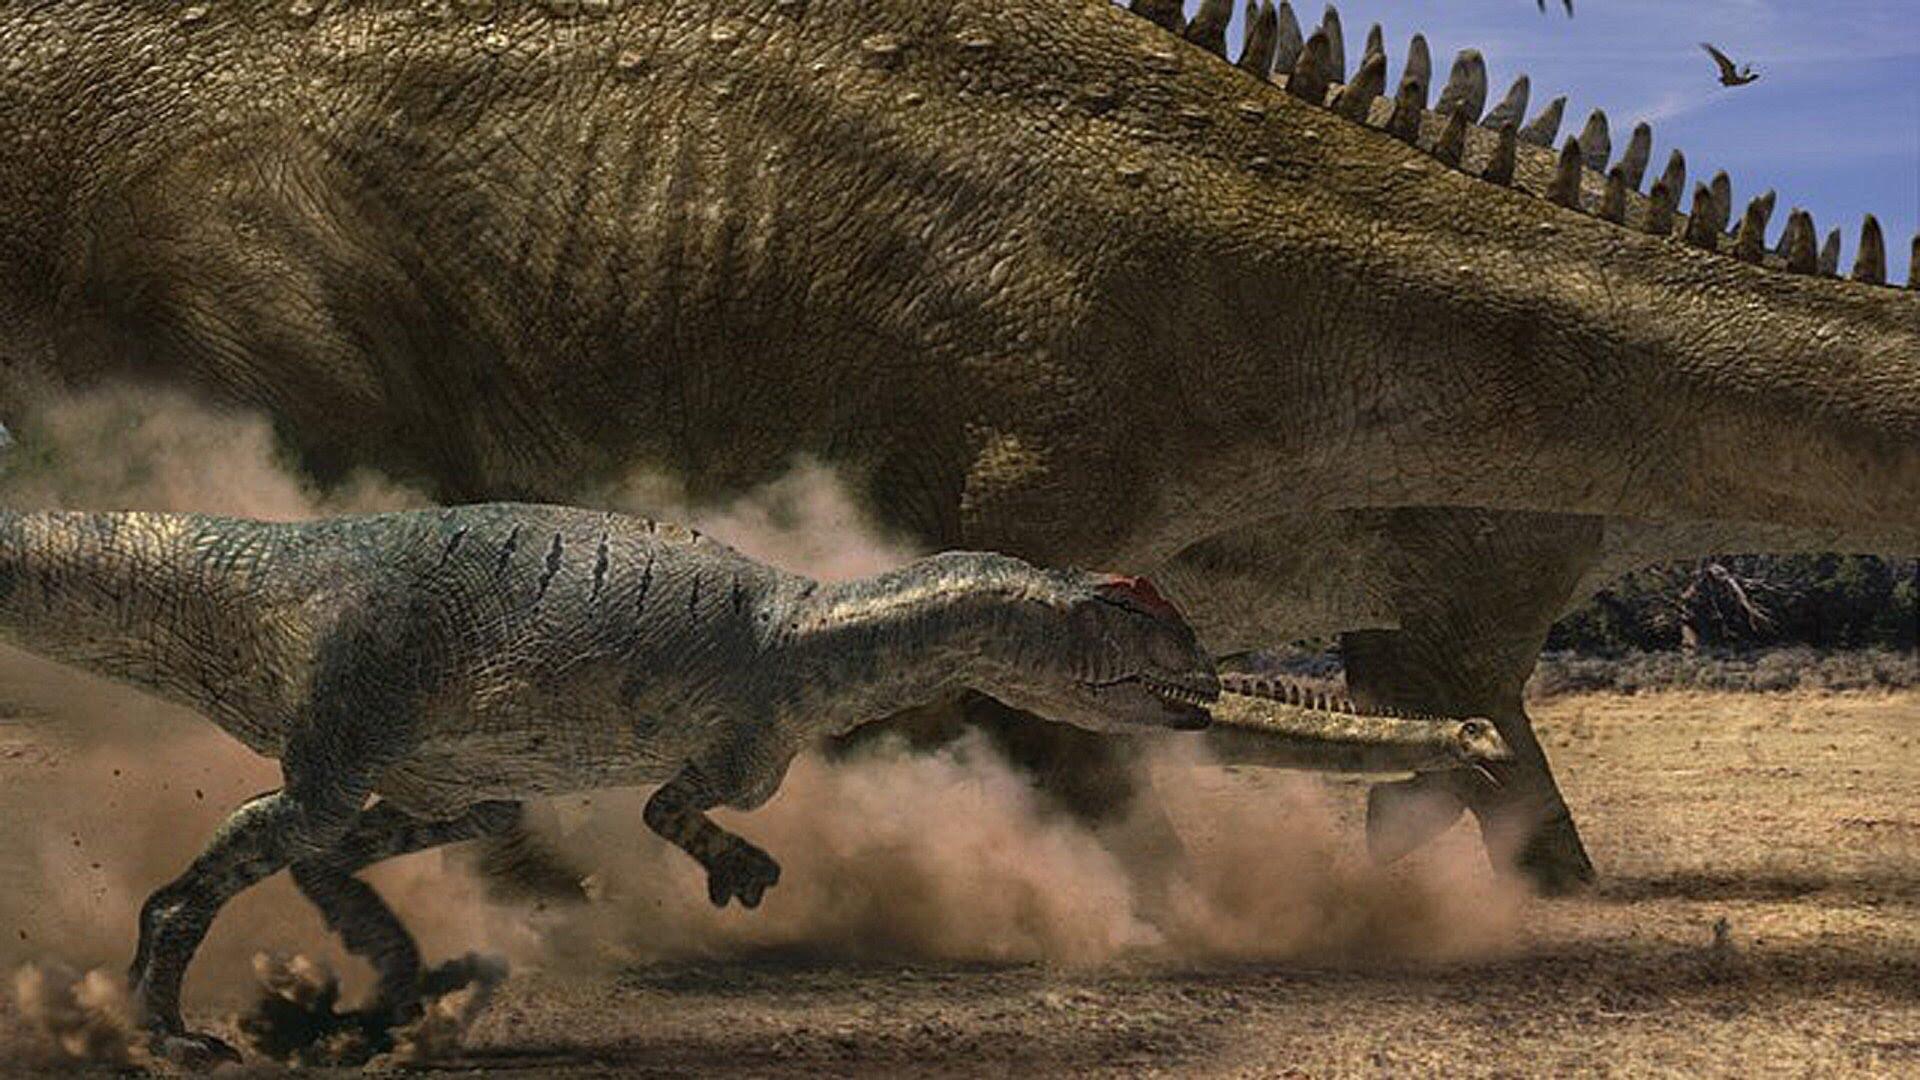 Сцена из фильма "Прогулки с Динозаврами"